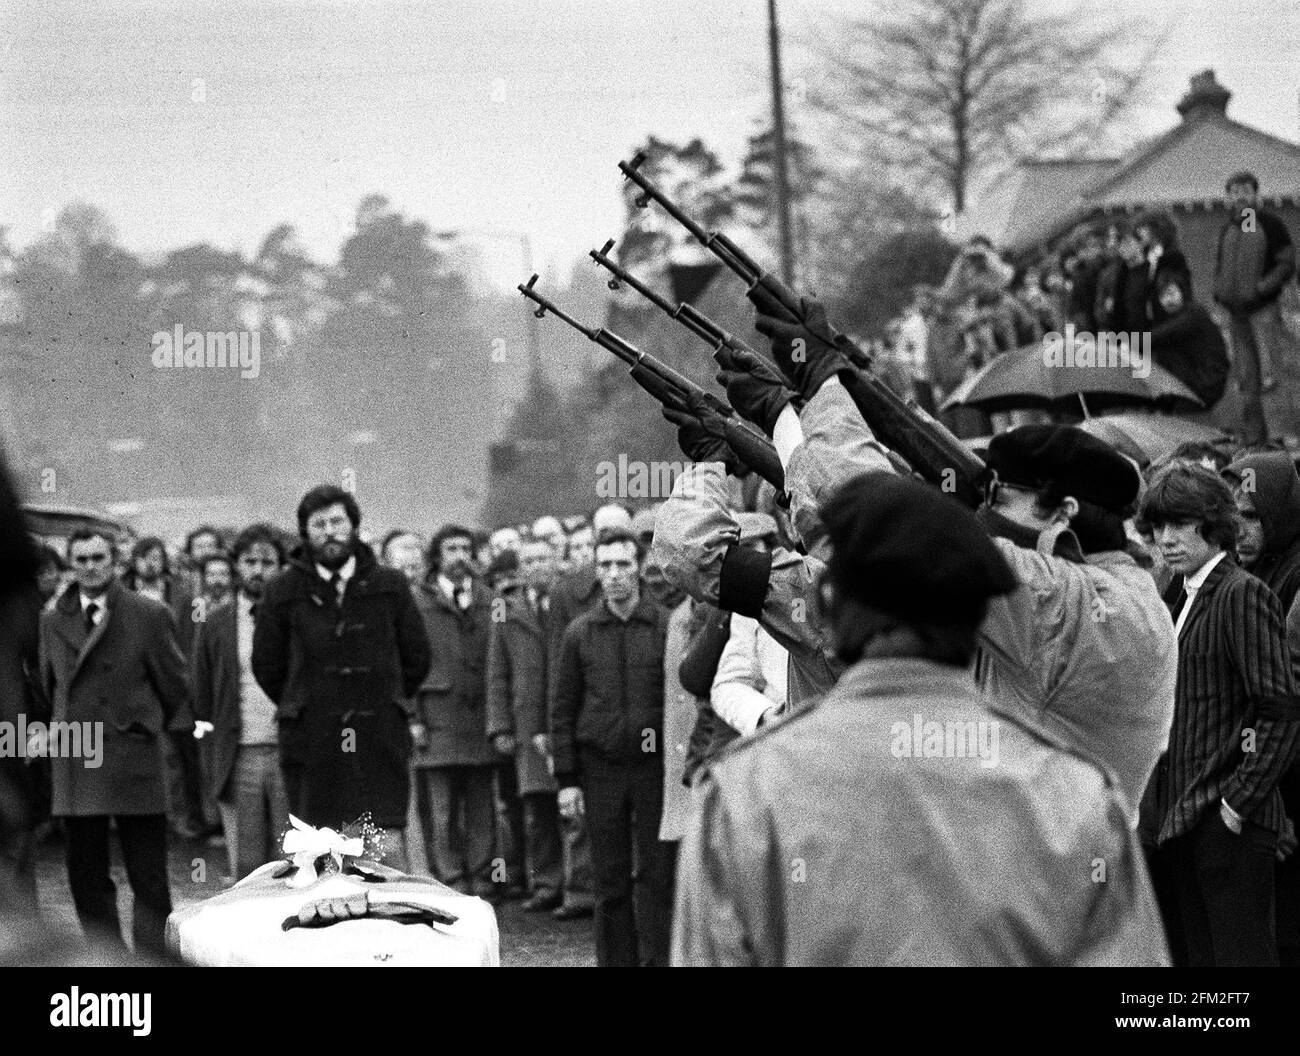 Aktenfoto vom 07/05/1981 von drei maskierten IRA-Männern, die während einer Pause in der Trauerprozession auf dem Weg zum Milltown-Friedhof in Belfast mit Büchsengeschossen über den Sarg von Bobby Sands schossen. Der Tod des IRA-Gefangenen Bobby Sands vor 40 Jahren in dieser Woche, gefolgt von neun weiteren Republikanern während eines Hungerstreiks im Gefängnis Maze in Co Antrim, löste in ganz Nordirland erhebliche zivile Unruhen aus. Ausgabedatum: Mittwoch, 5. Mai 2021. Stockfoto